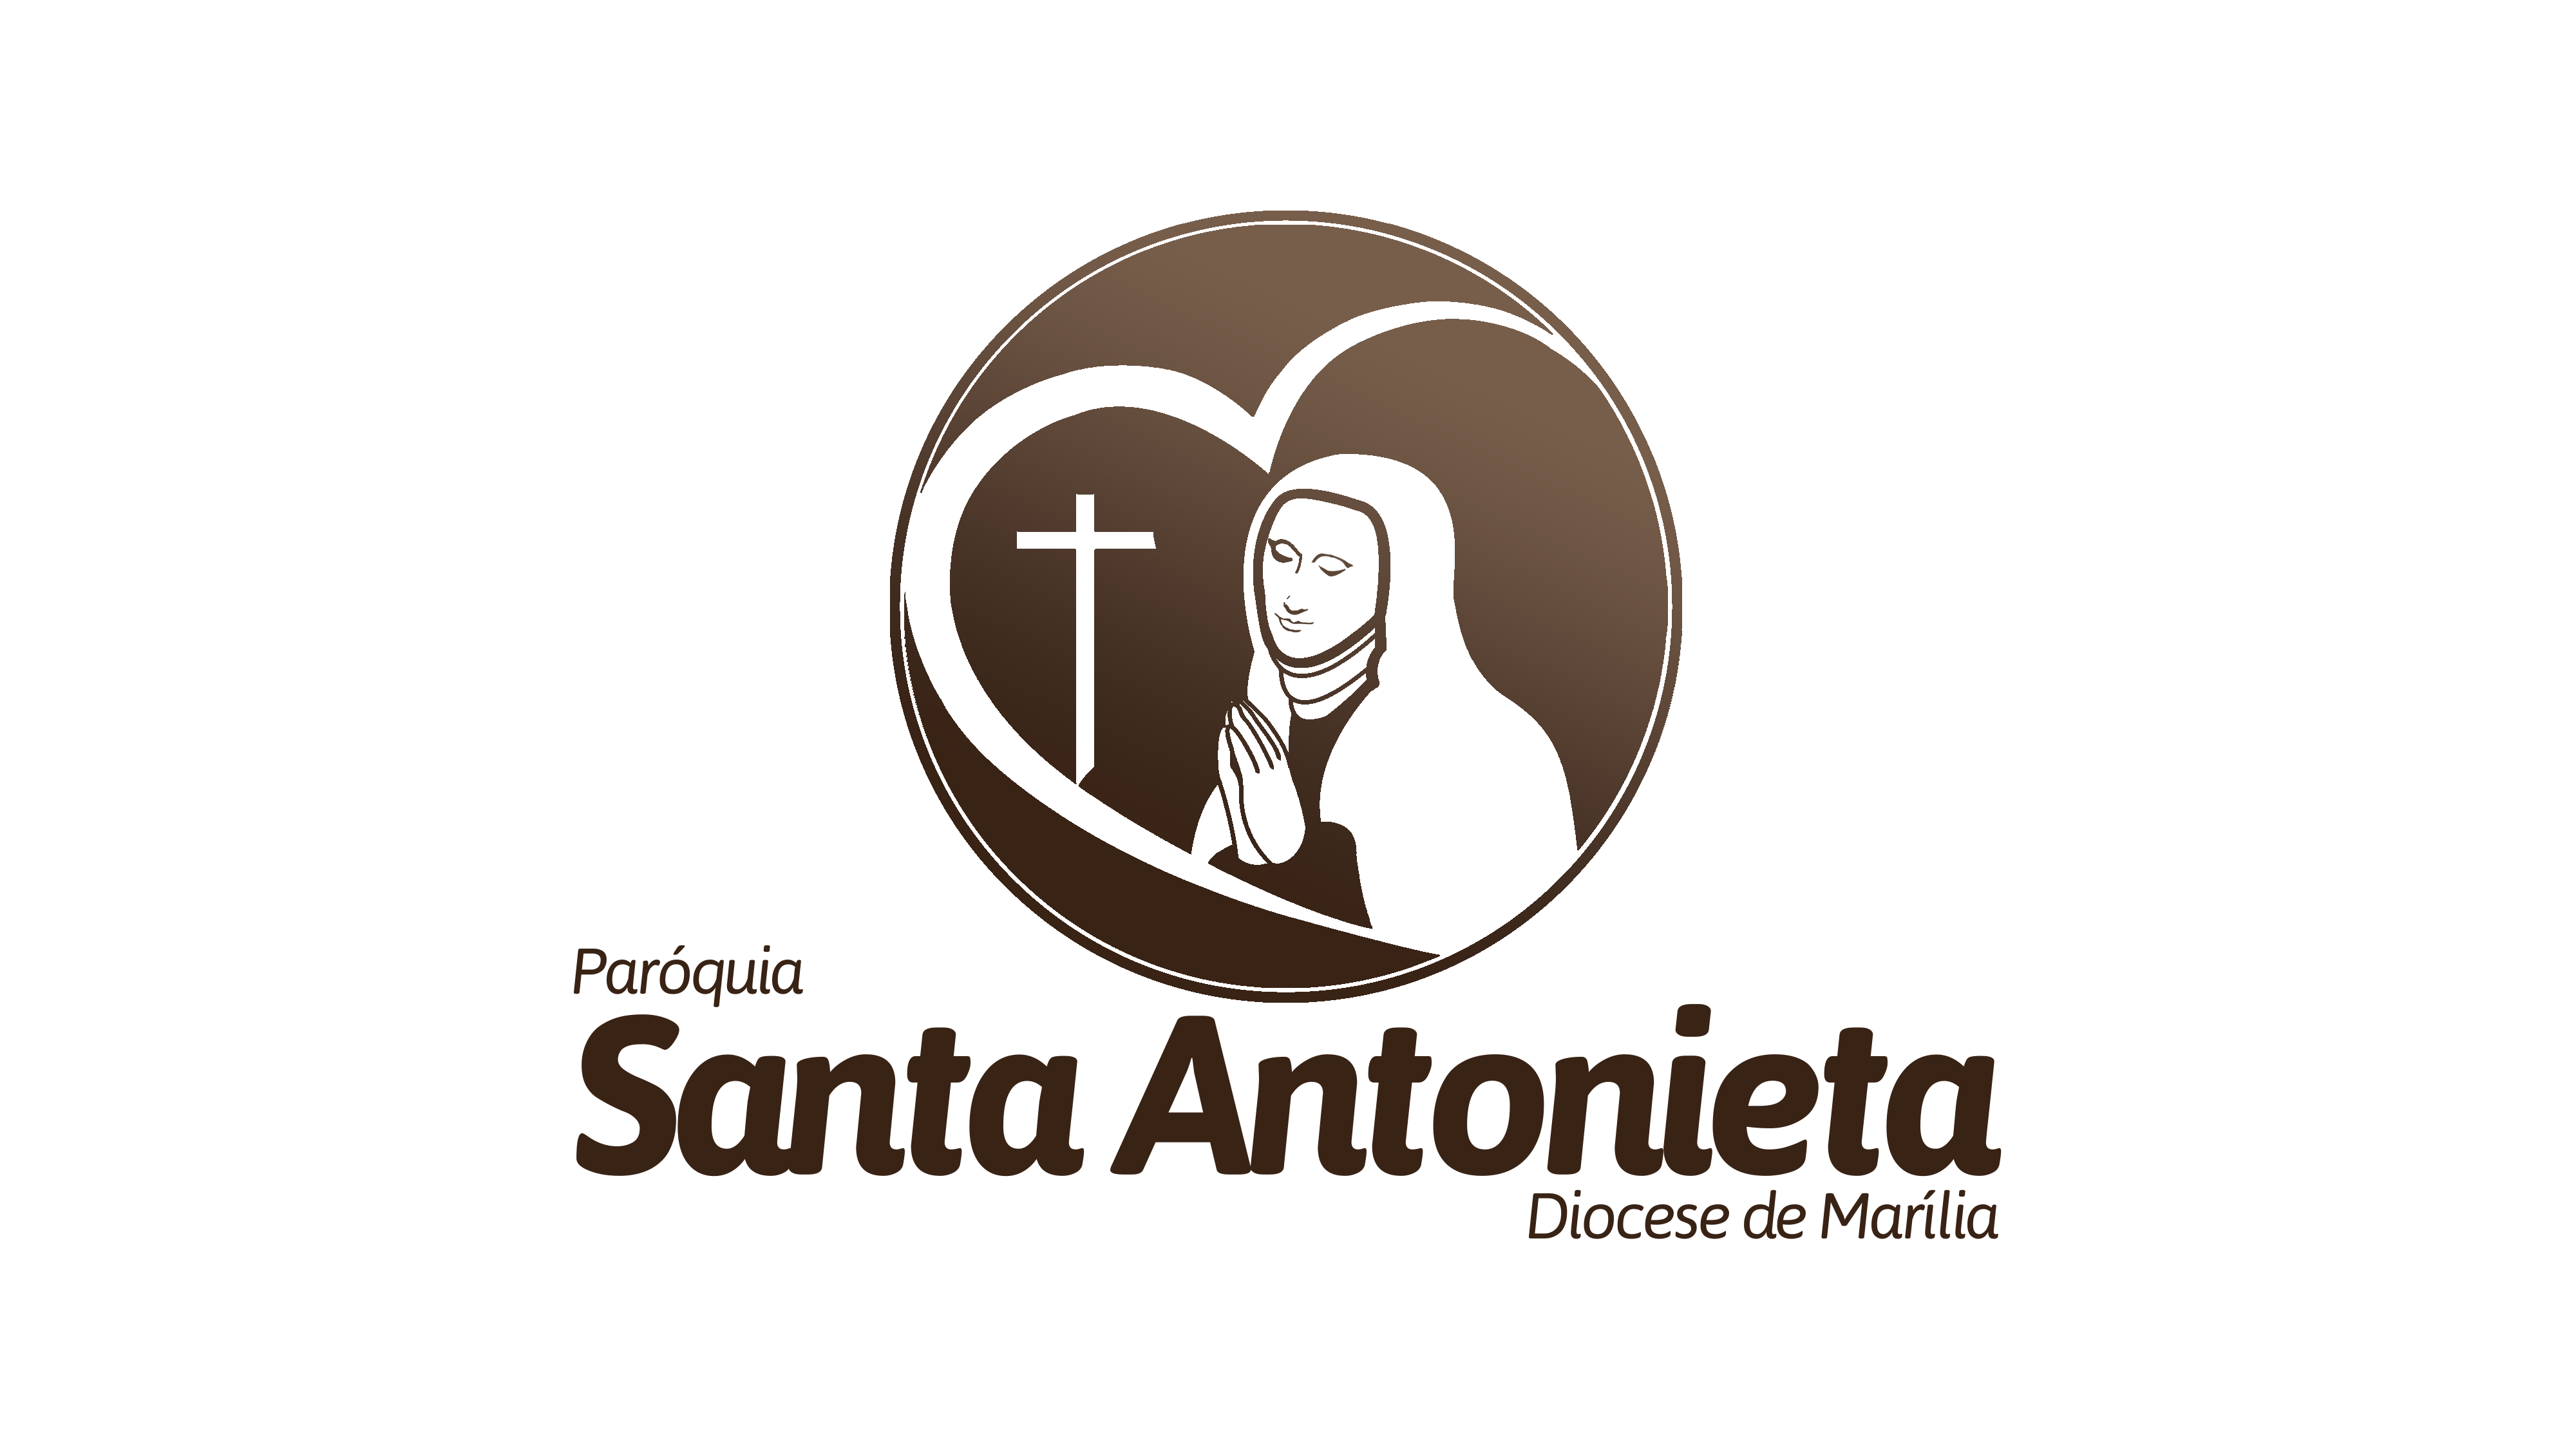 Paróquia Santa Antonieta